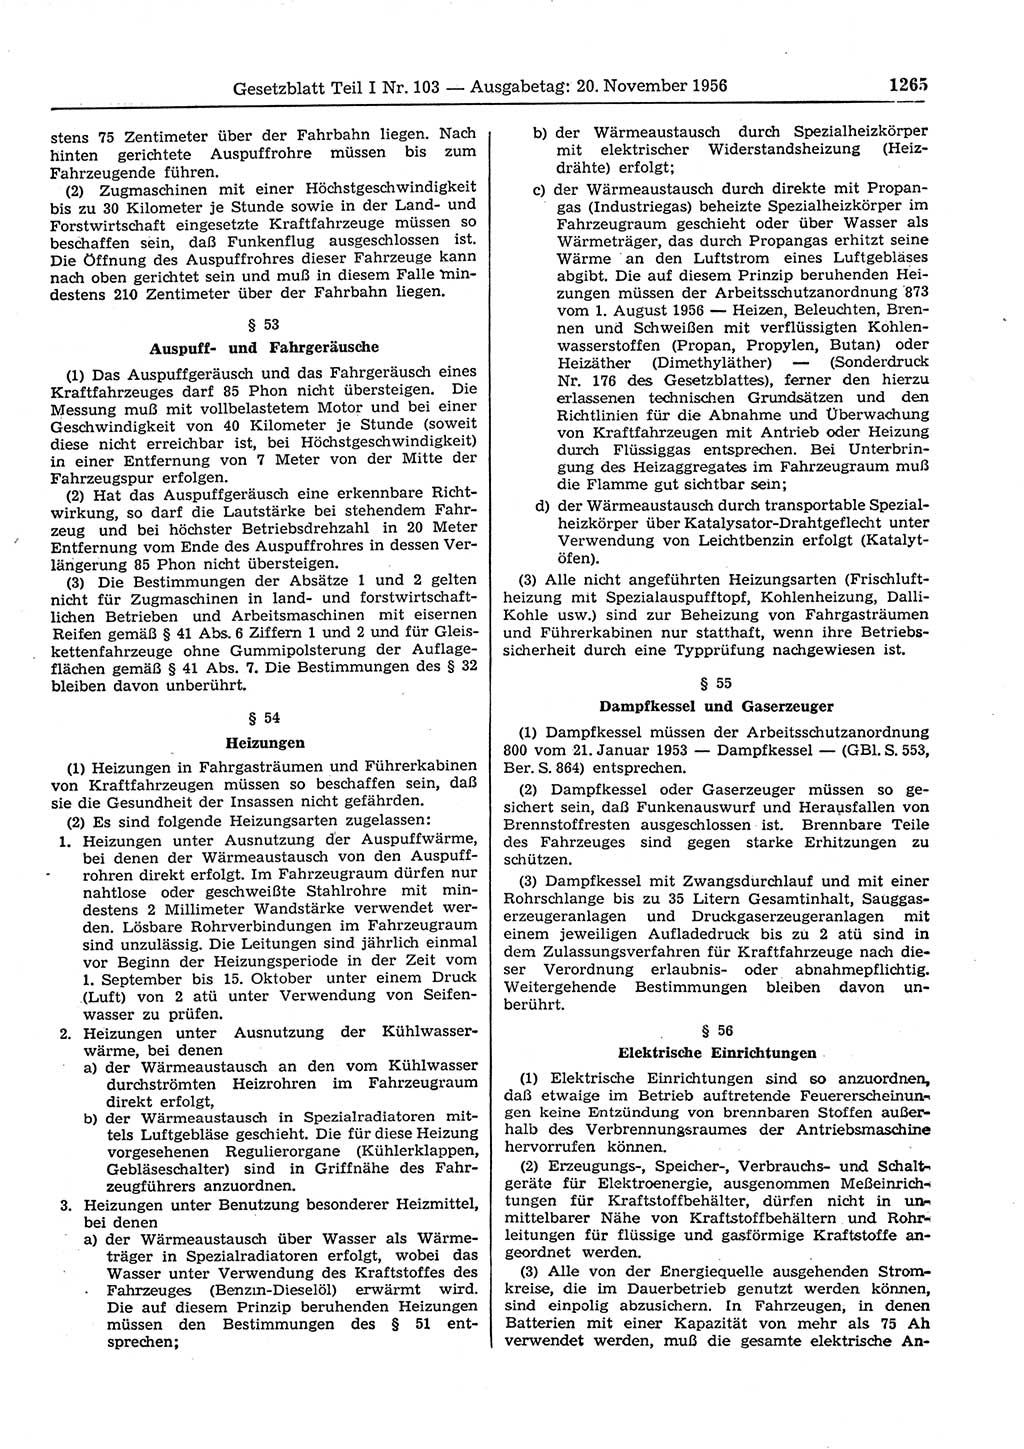 Gesetzblatt (GBl.) der Deutschen Demokratischen Republik (DDR) Teil Ⅰ 1956, Seite 1265 (GBl. DDR Ⅰ 1956, S. 1265)